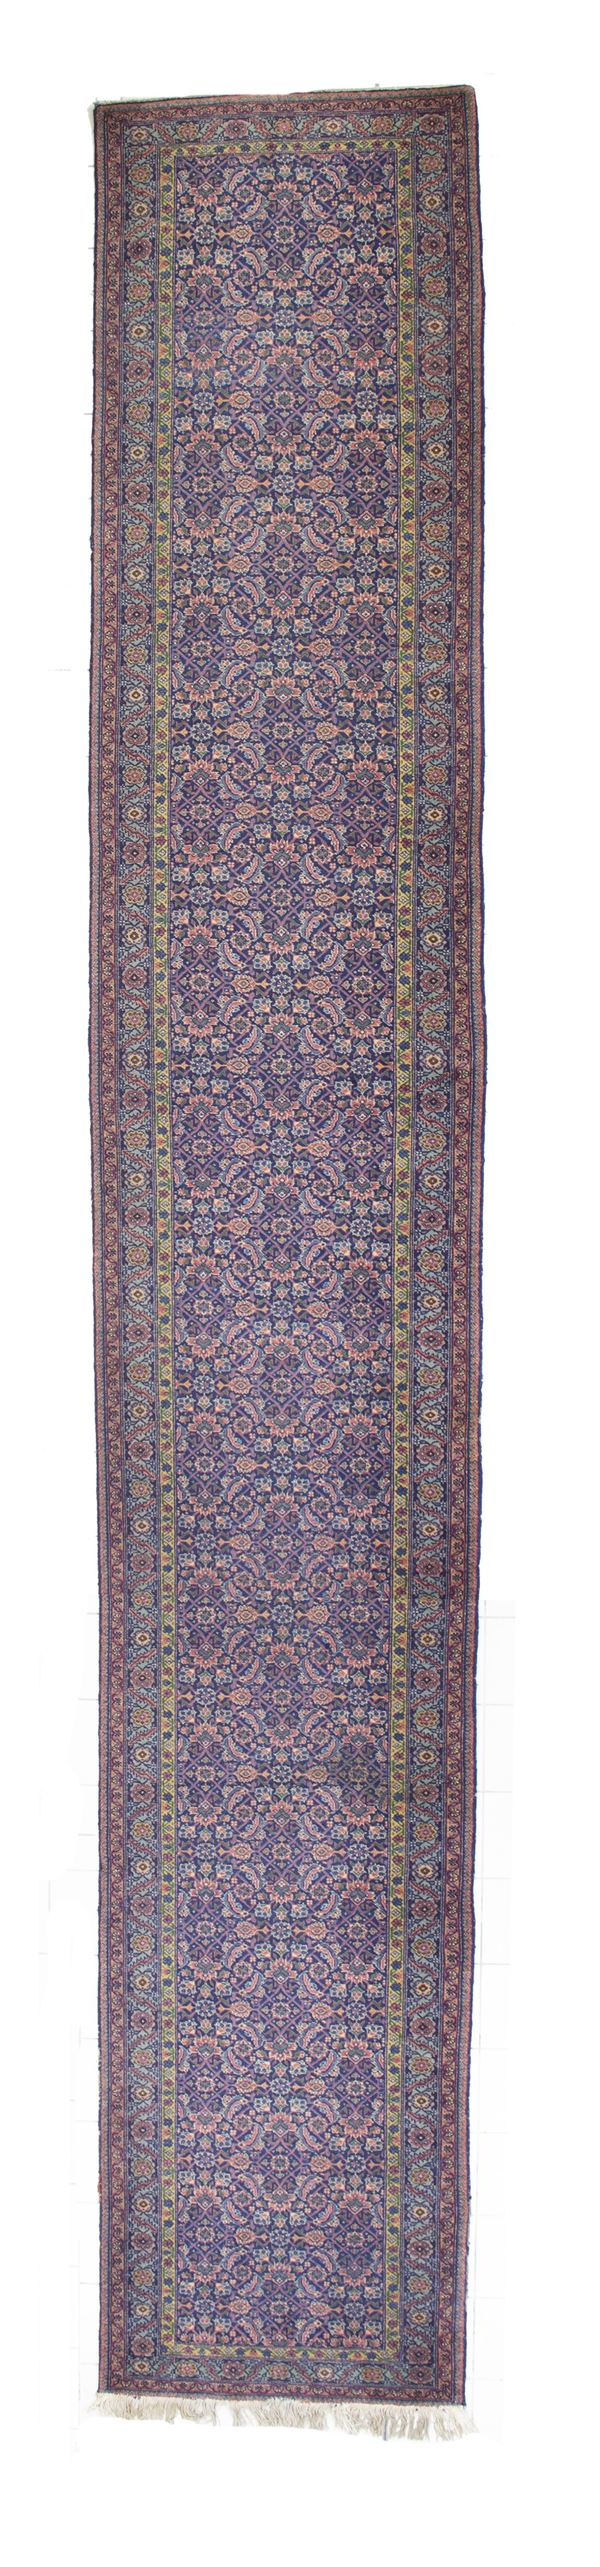 Mahal carpet. Persia